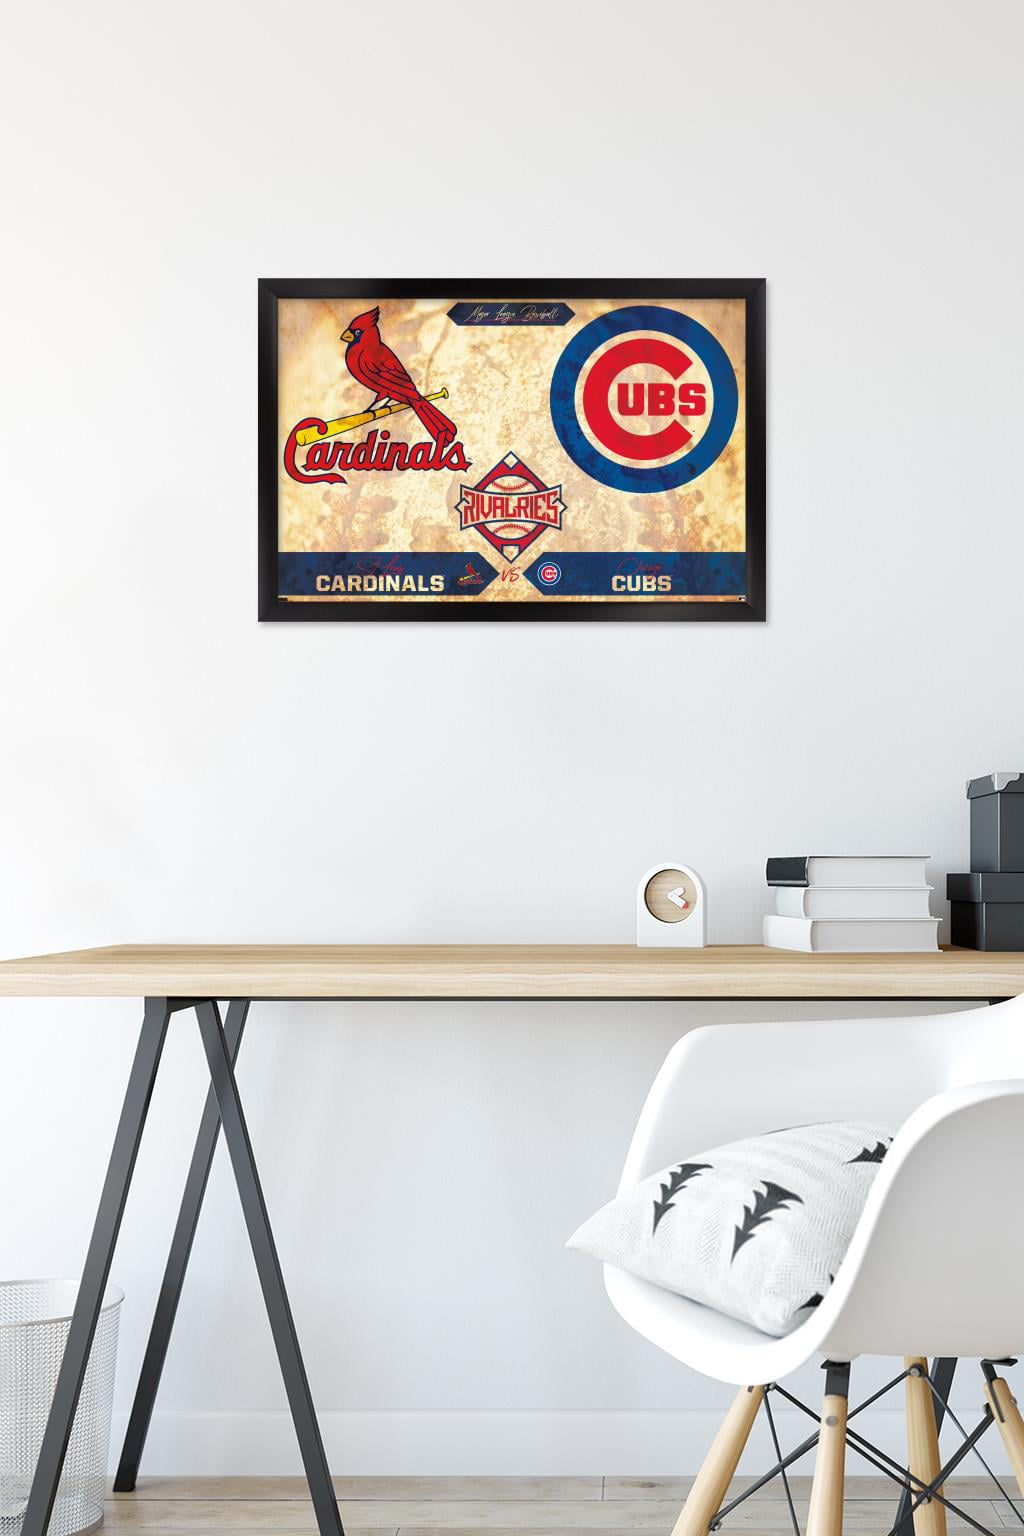 Trends International MLB St. Louis Cardinals - Busch Stadium 16 Framed Wall  Poster Prints Mahogany Framed Version 22.375 x 34